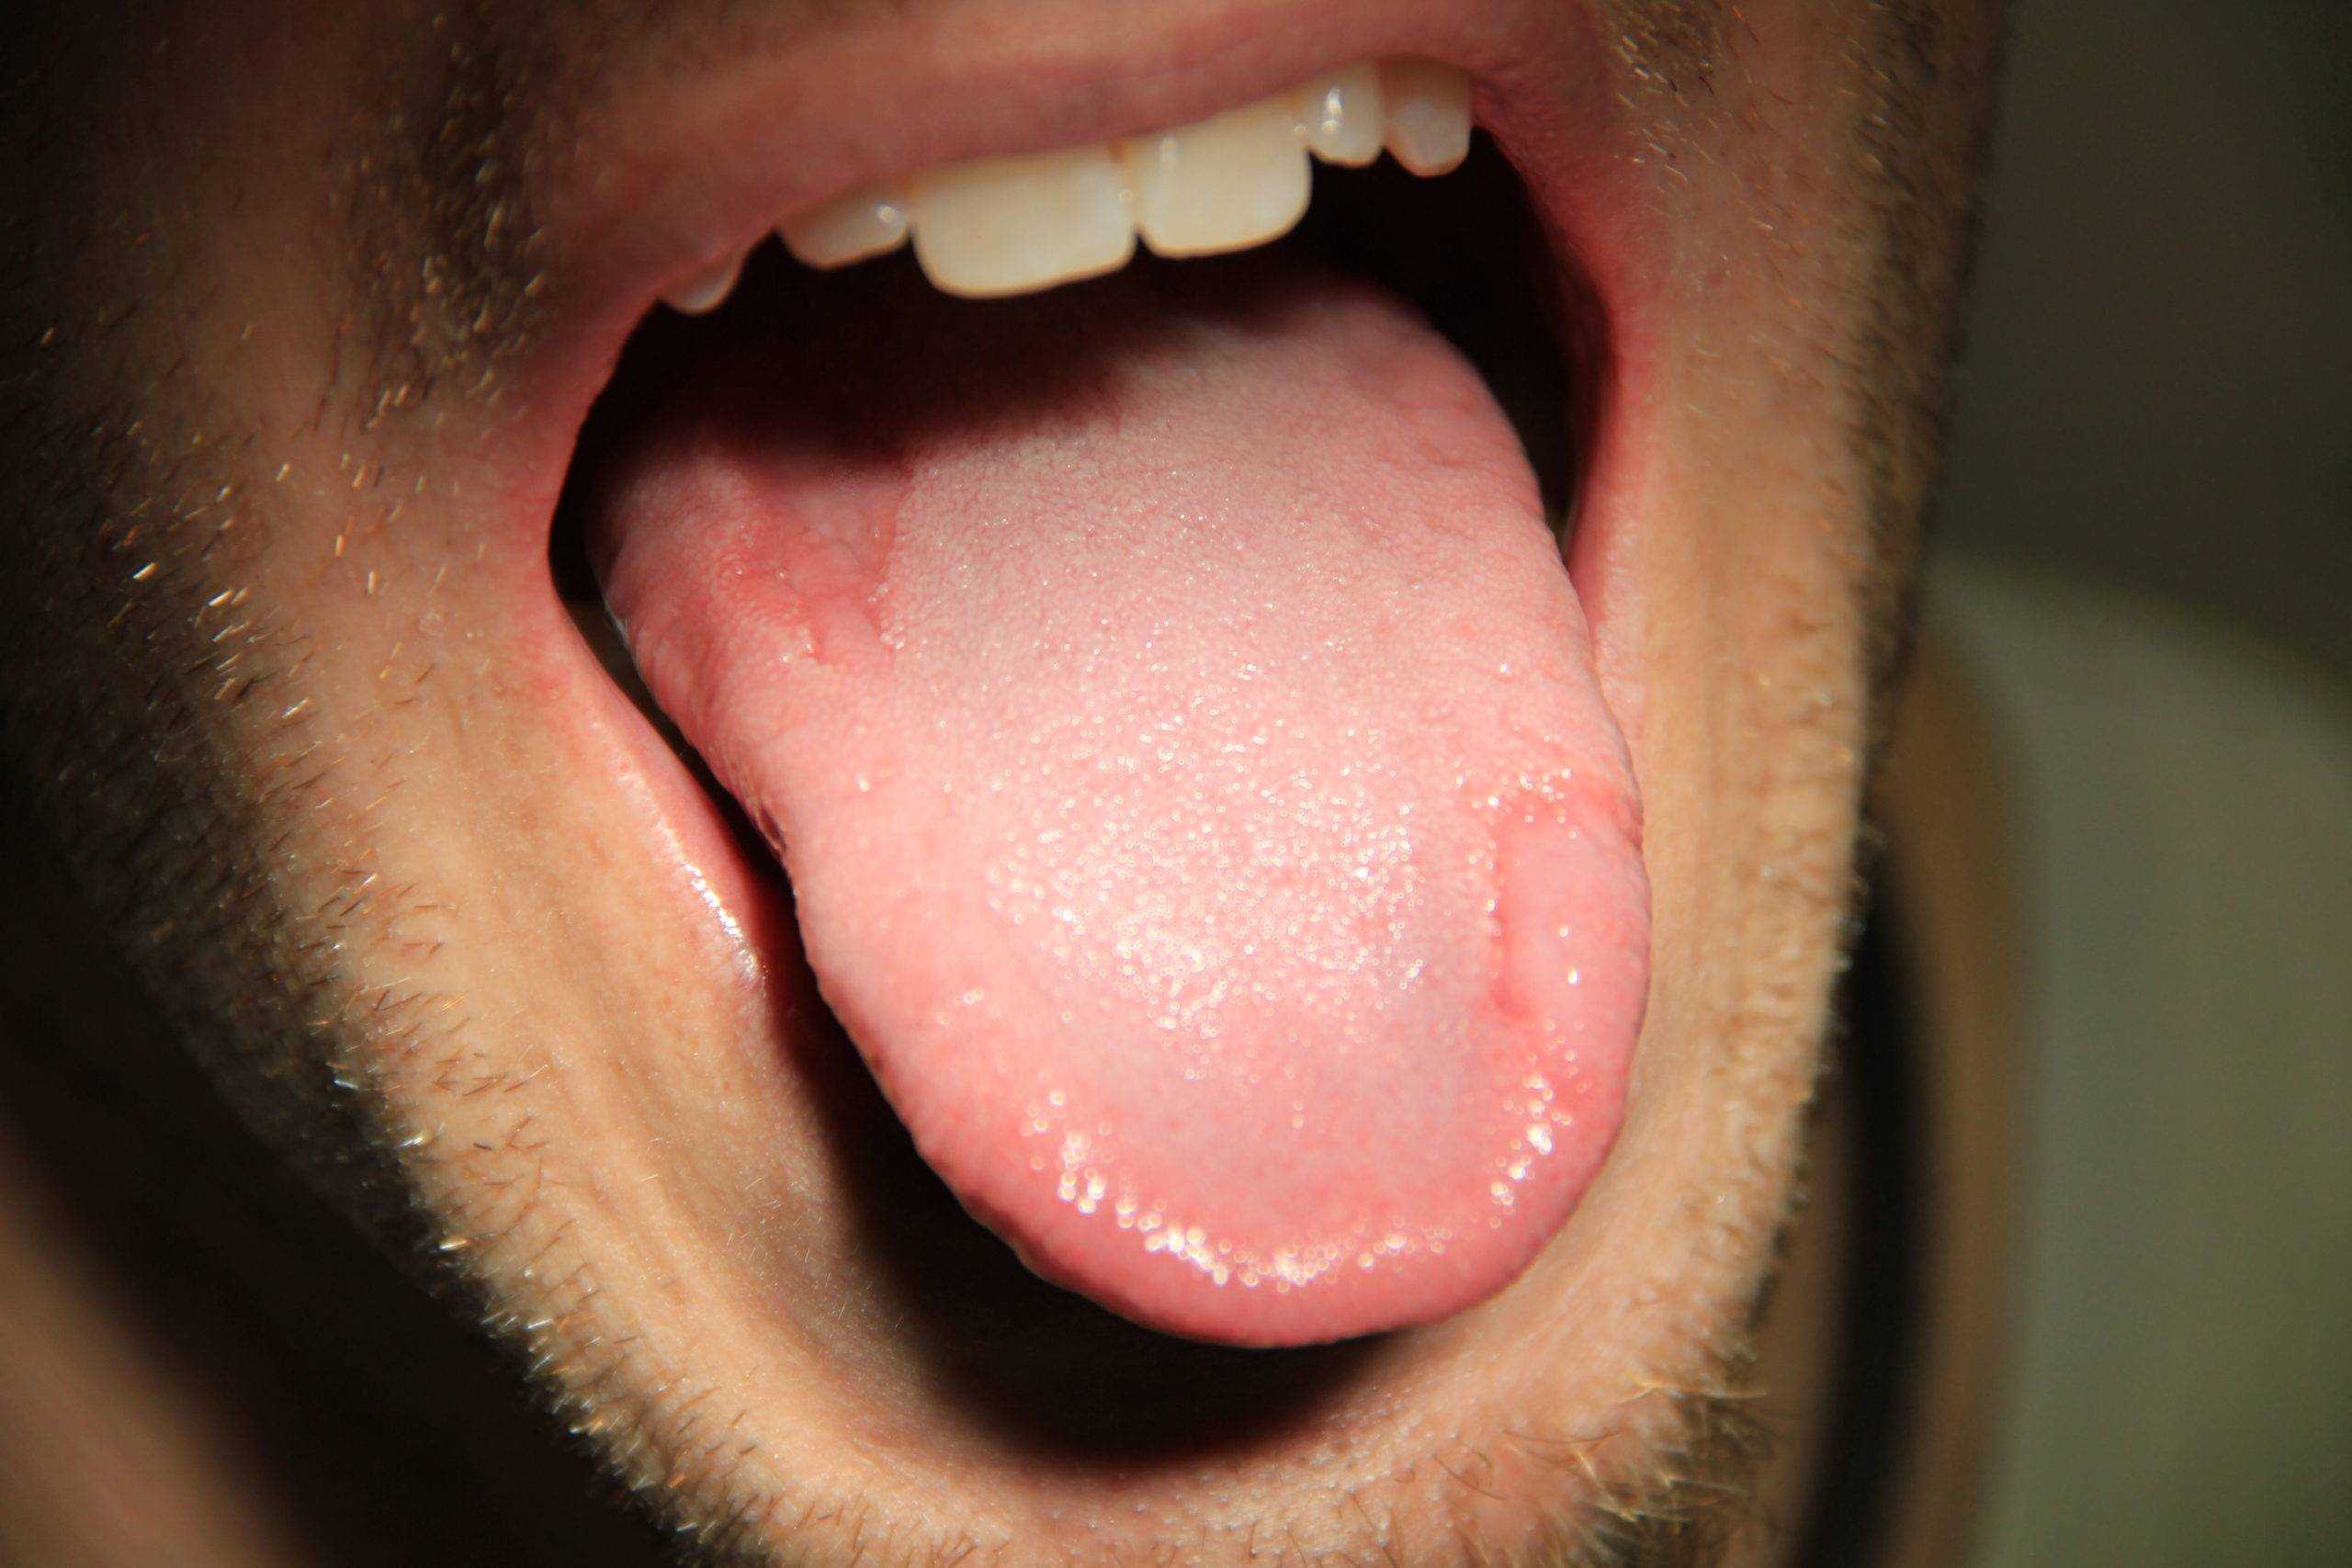 Если сухость во рту и вяжущие ощущения – единственные симптомы, которые ощущает человек, это может указывать на кариес, повышенную чувствительность десен